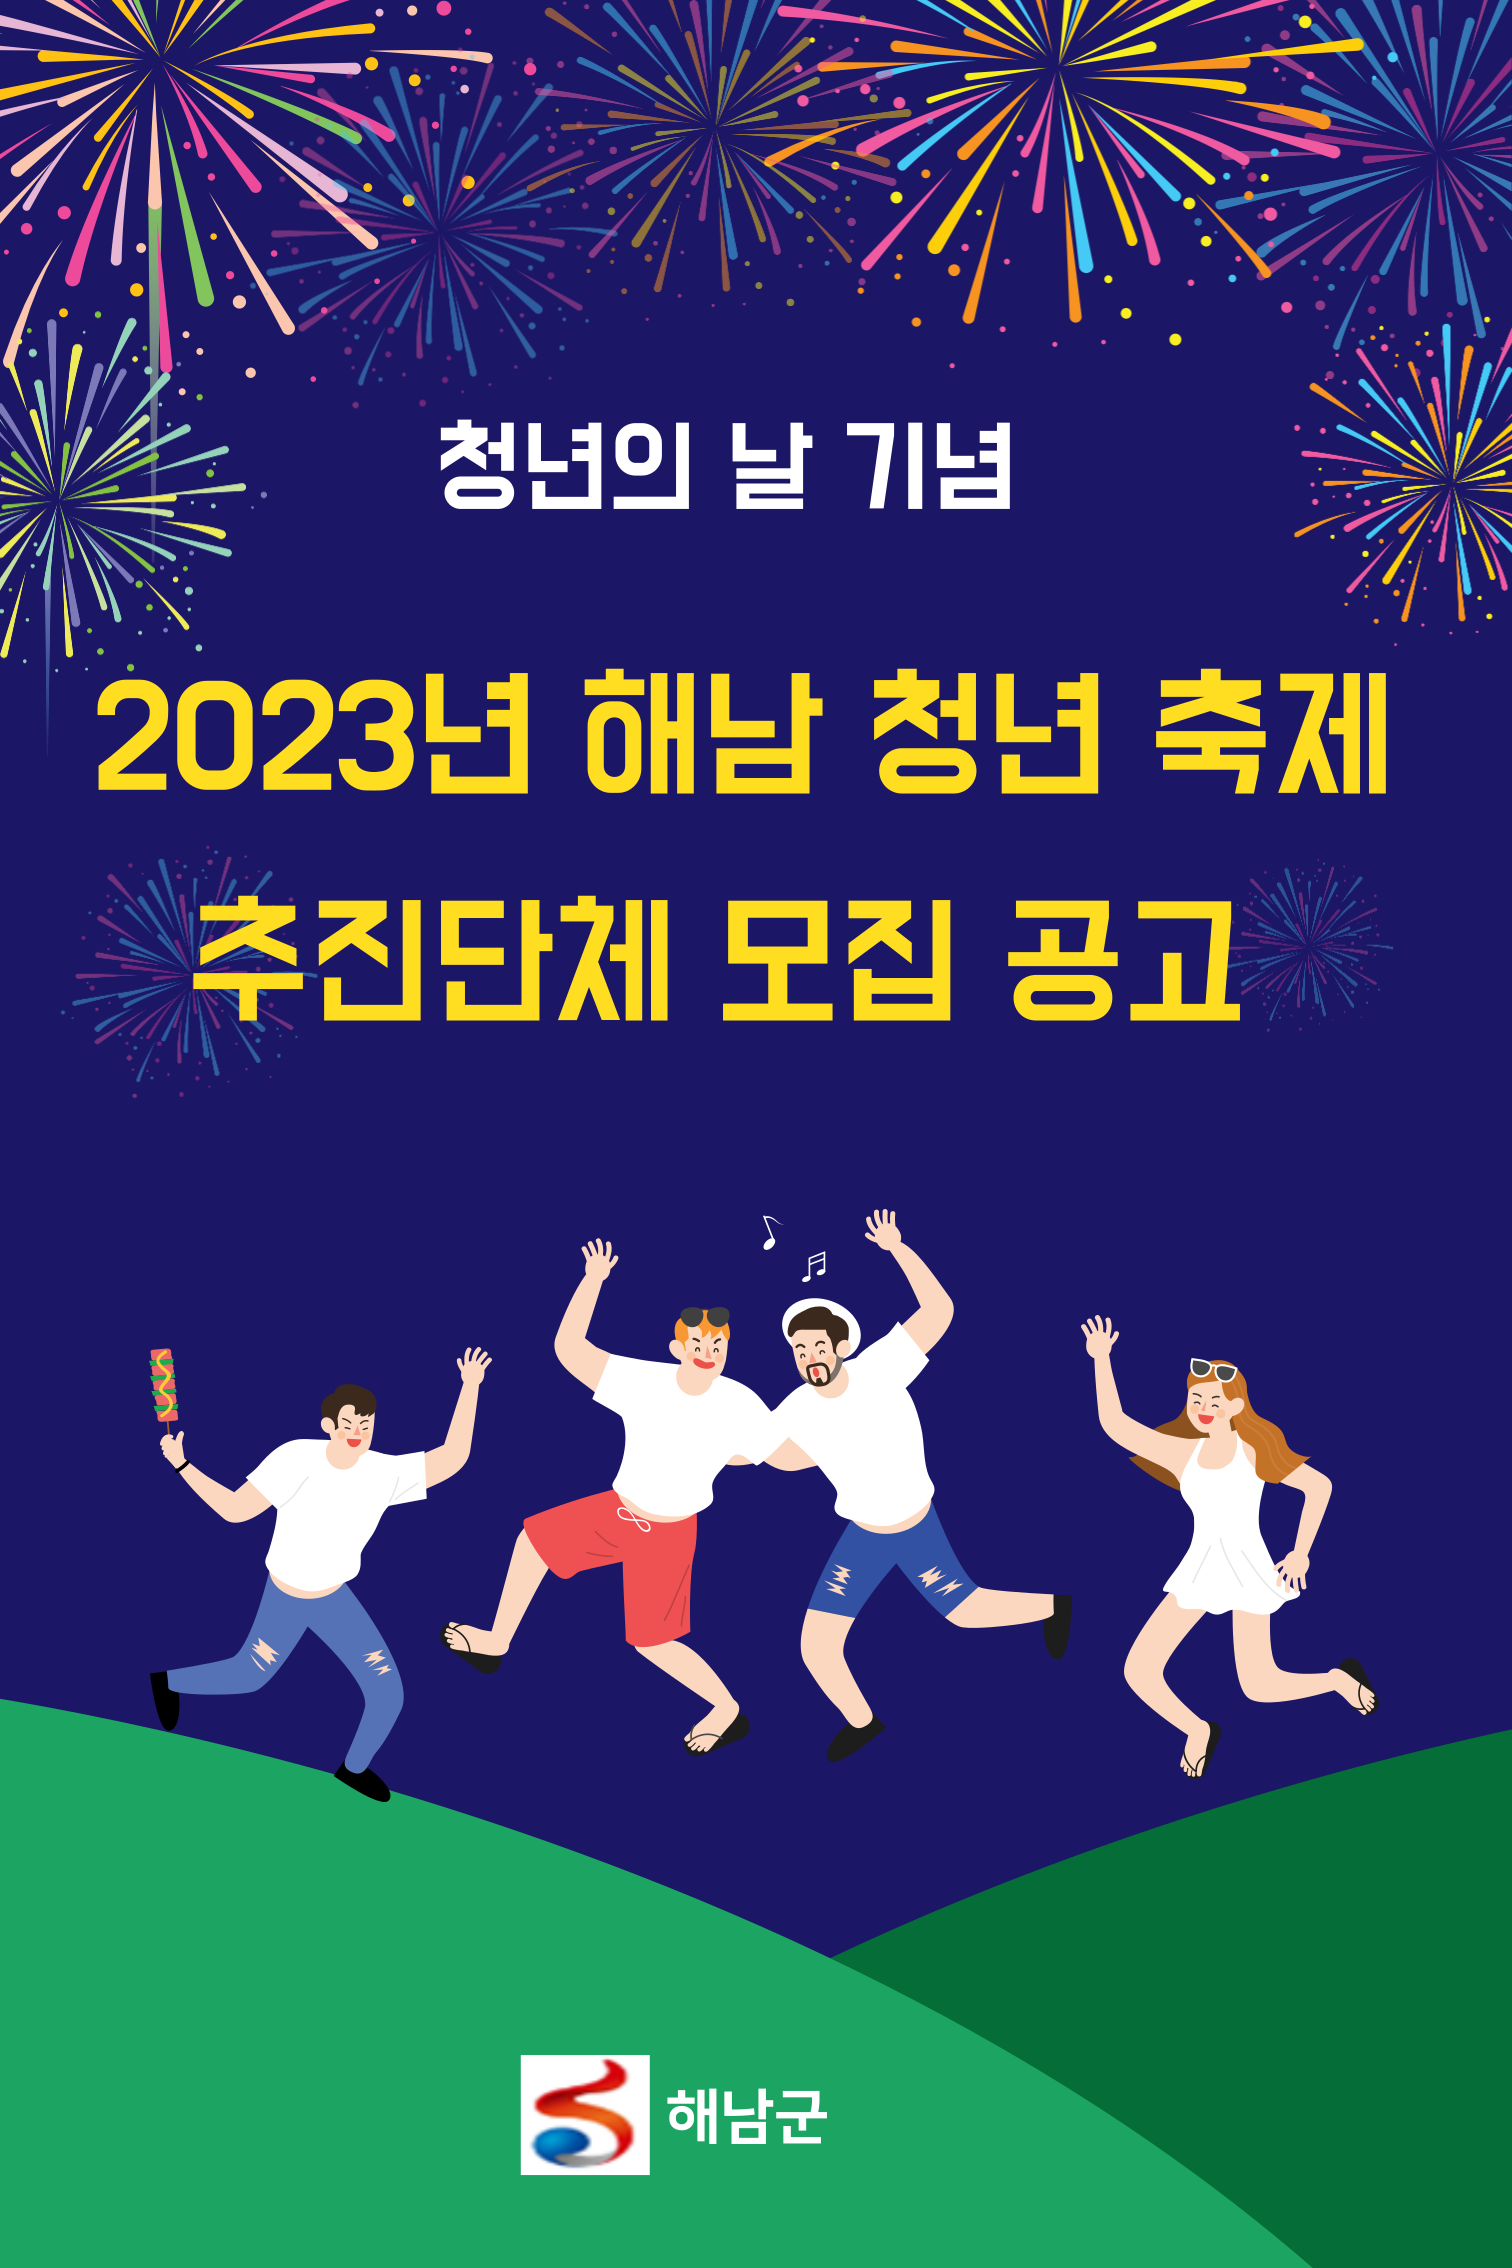 2023년 해남 청년 축제 추진 단체 모집 공고